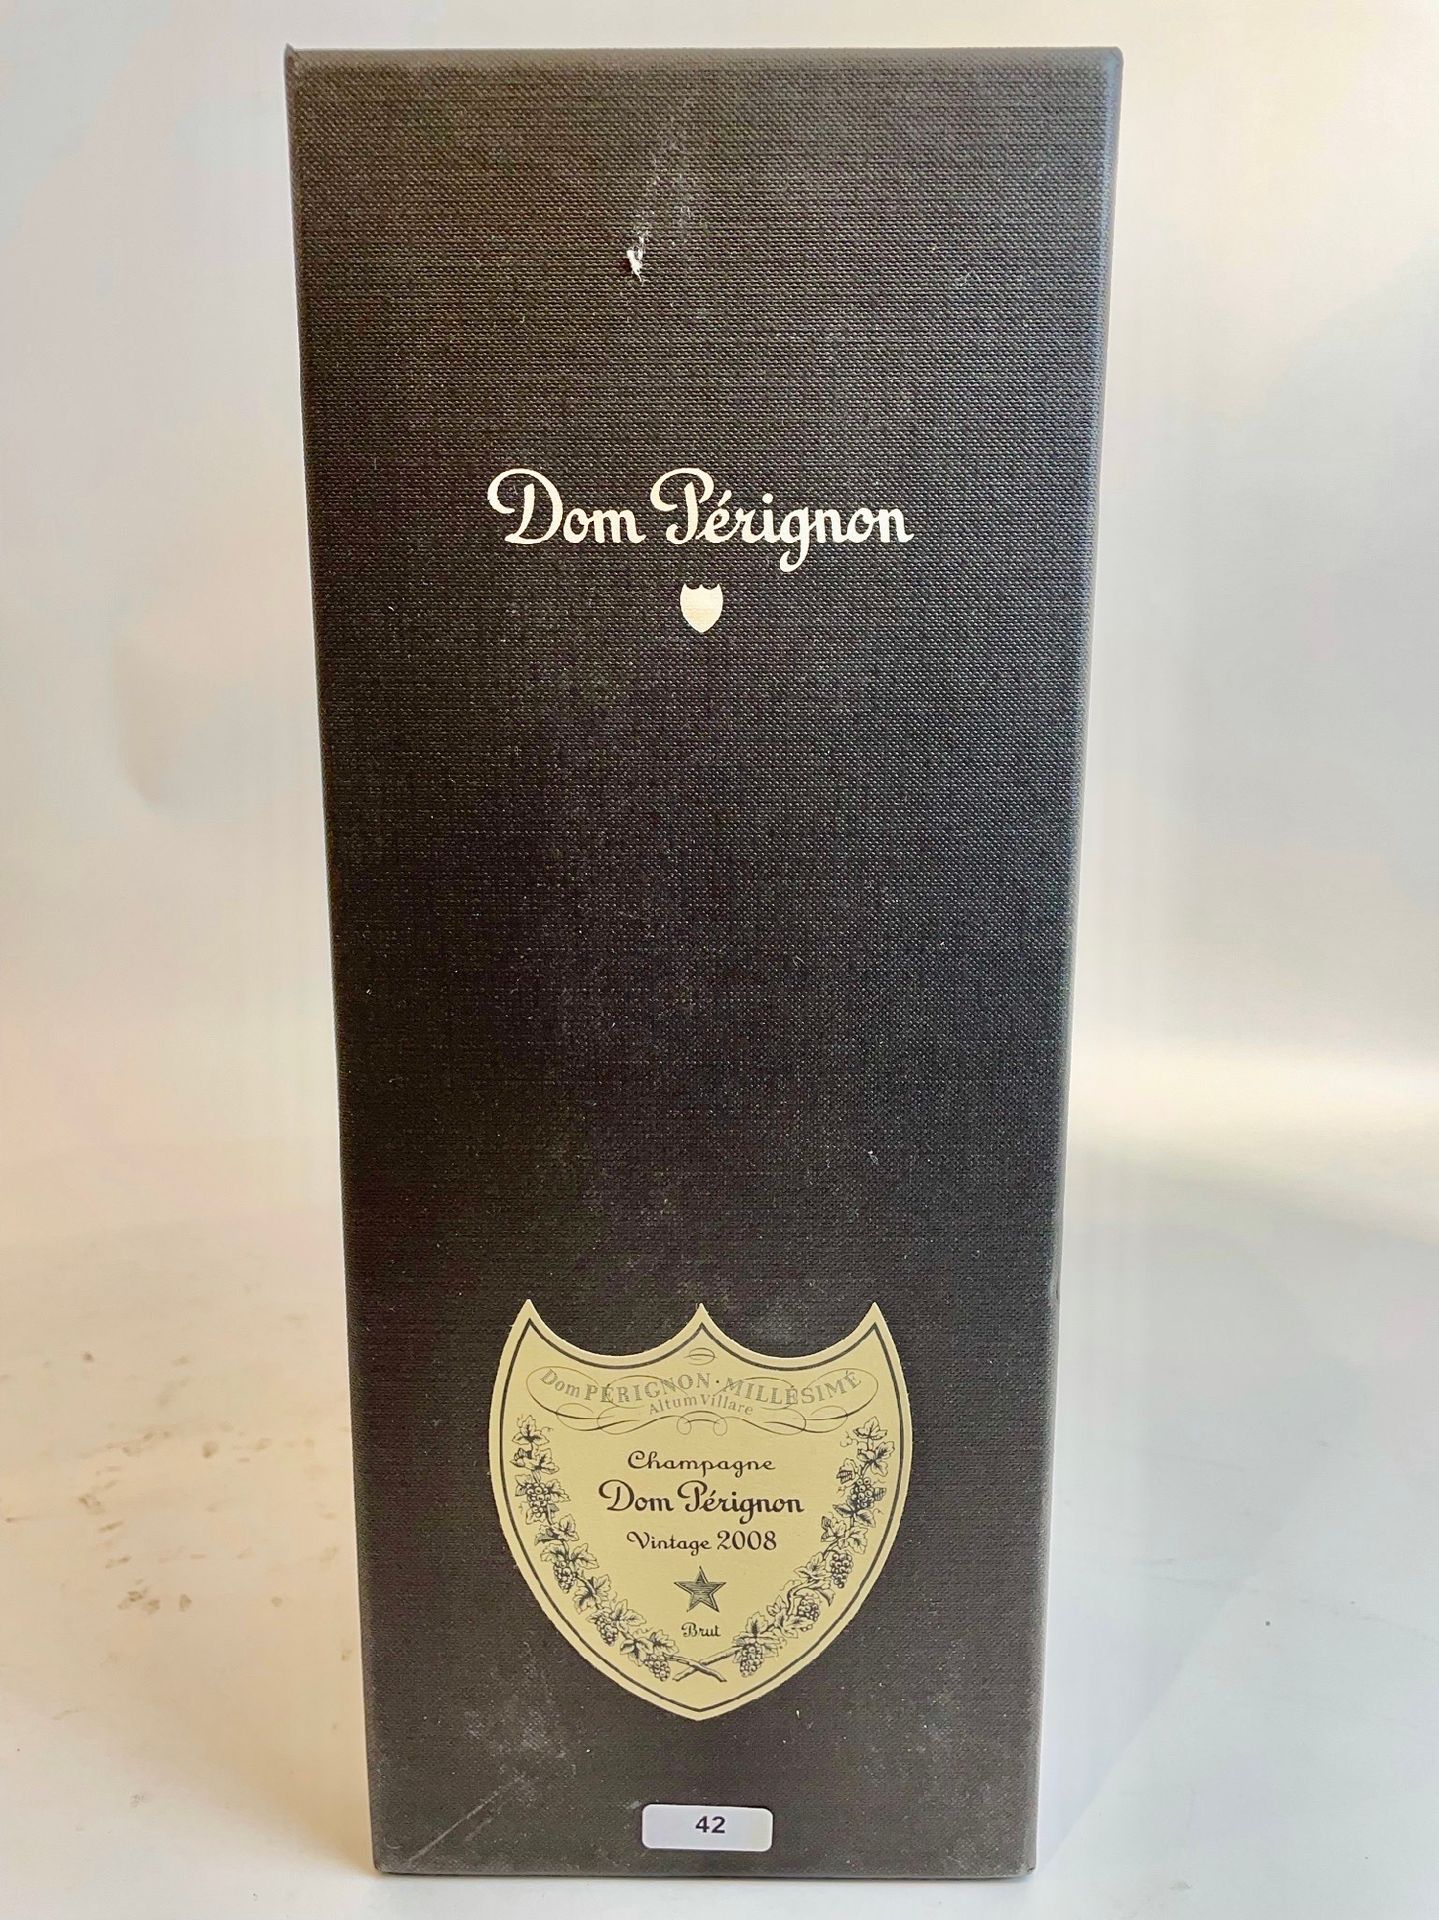 CHAMPAGNE Dom Pérignon (Moët & Chandon) "Vintage", brut 2008, 一瓶在盒子里。